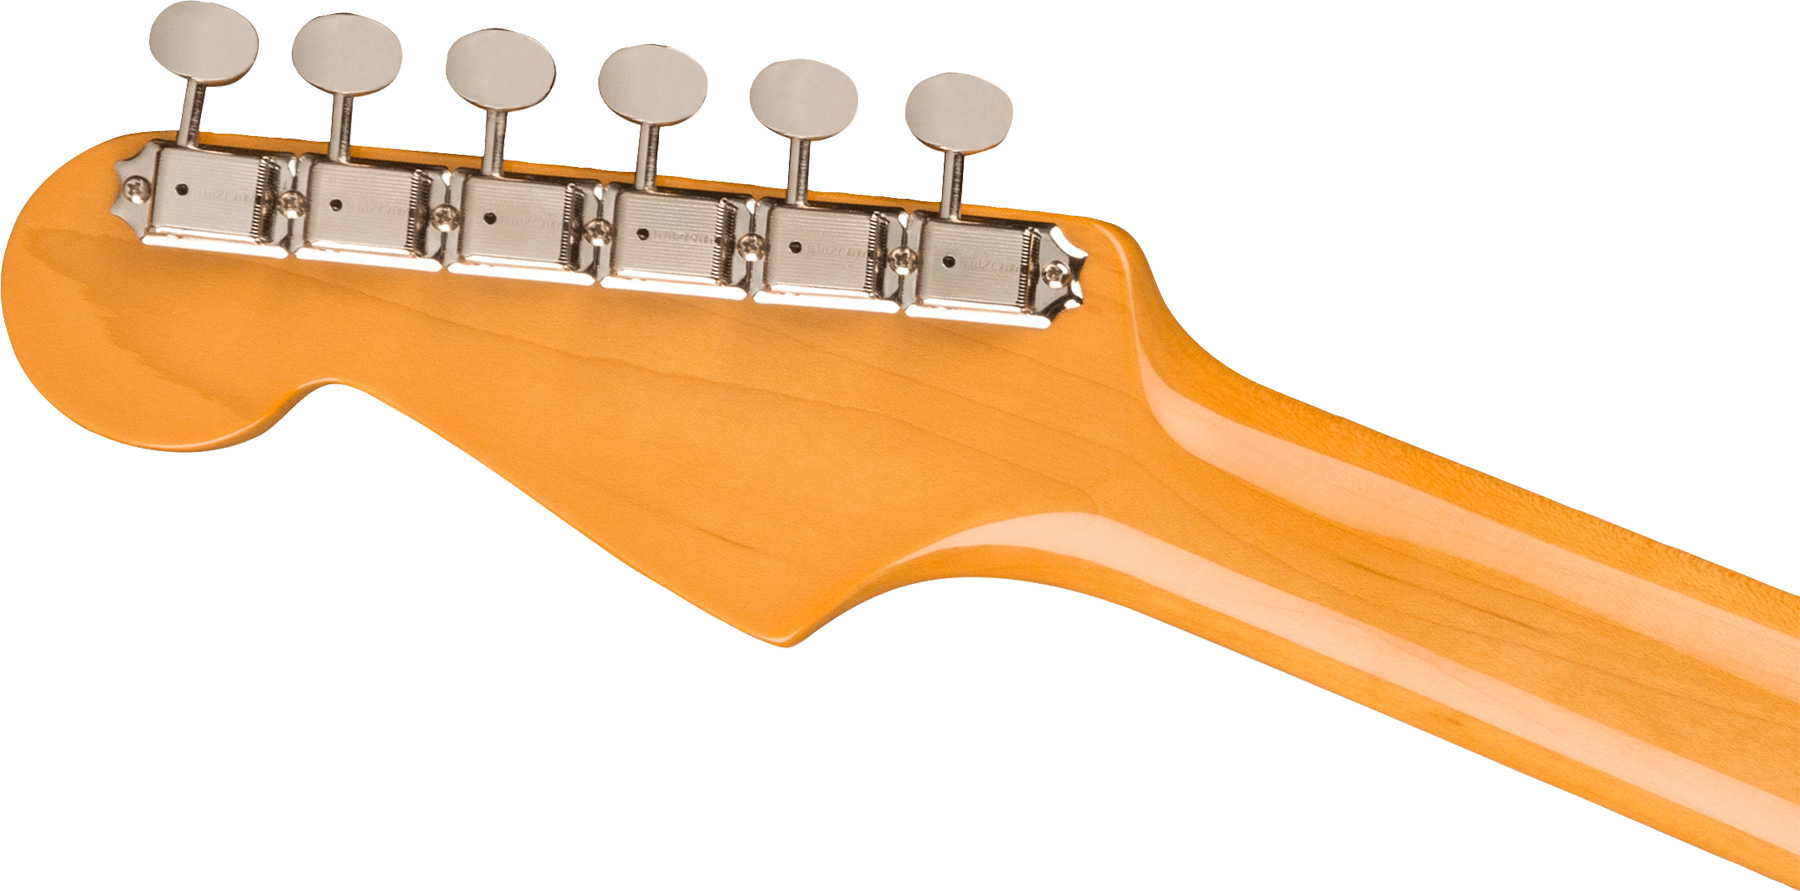 Fender Strat 1961 American Vintage Ii Usa 3s Trem Rw - 3-color Sunburst - E-Gitarre in Str-Form - Variation 3